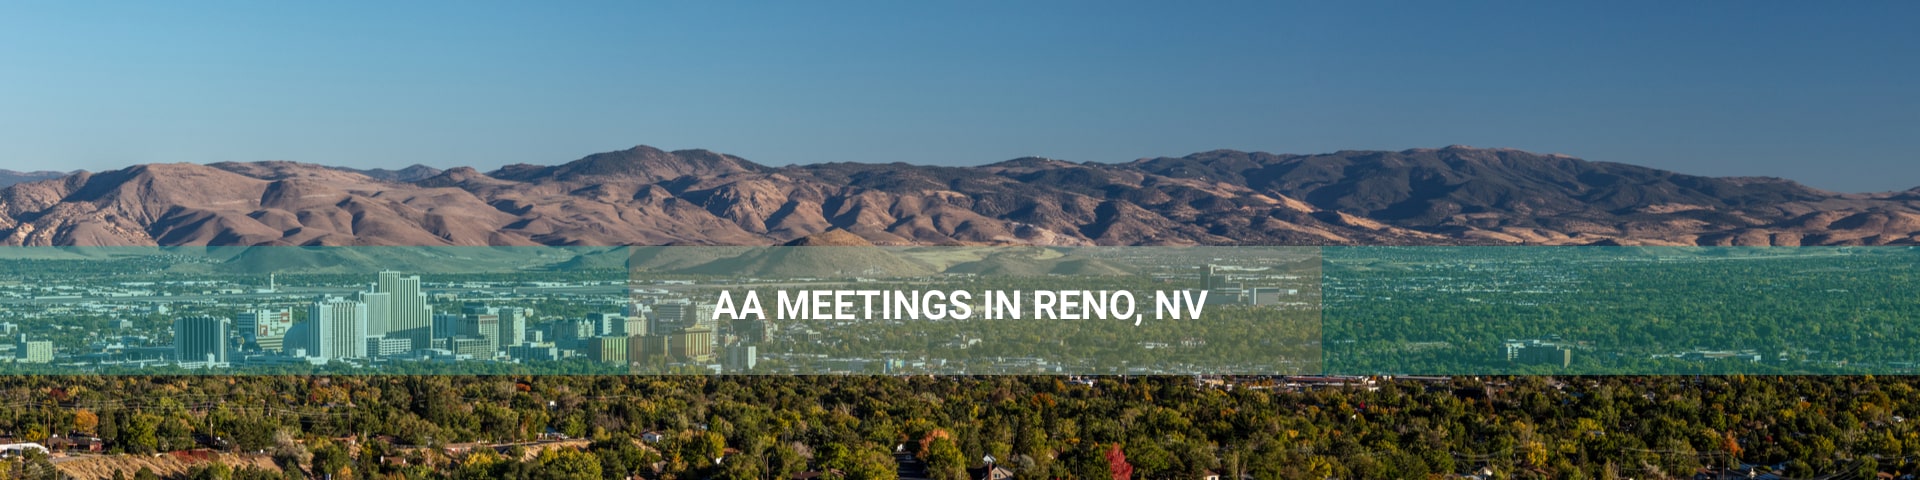 Panoramic view of Reno, Nevada